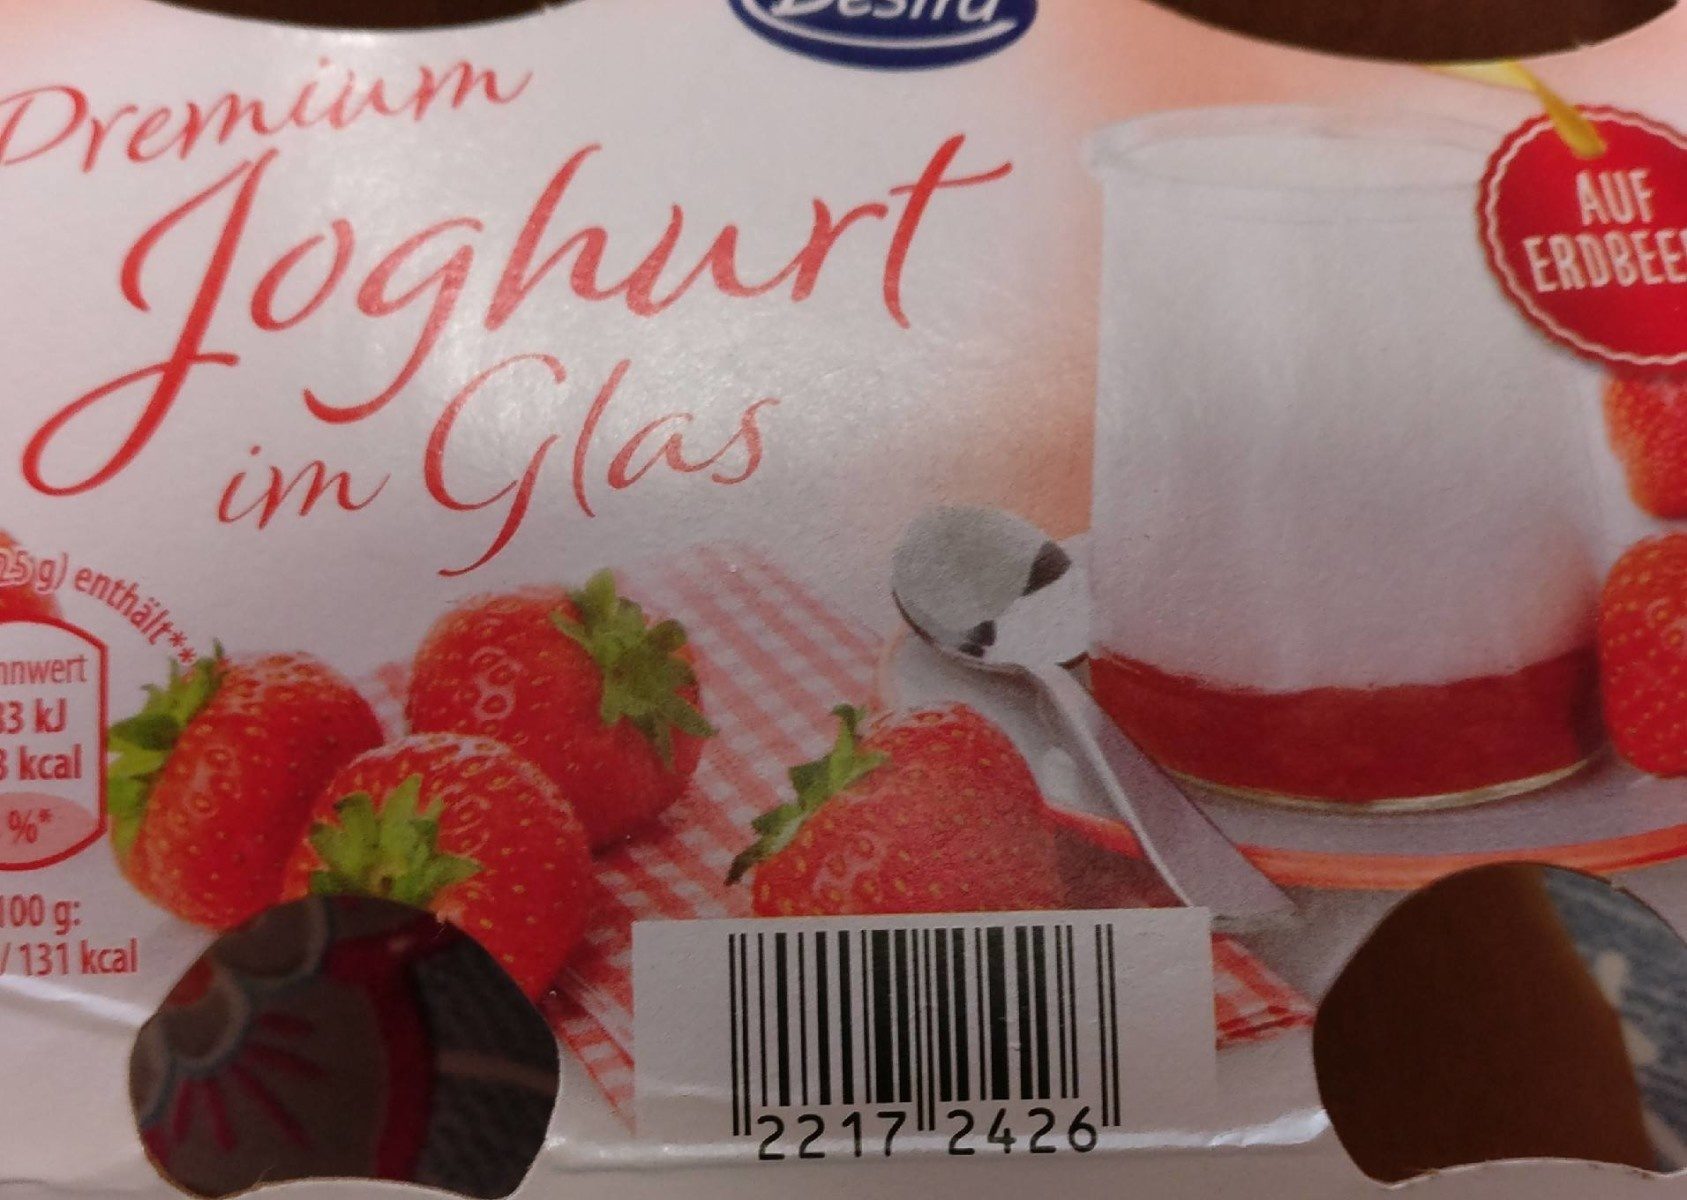 Joghurt Im Glas Himbeere - Product - fr